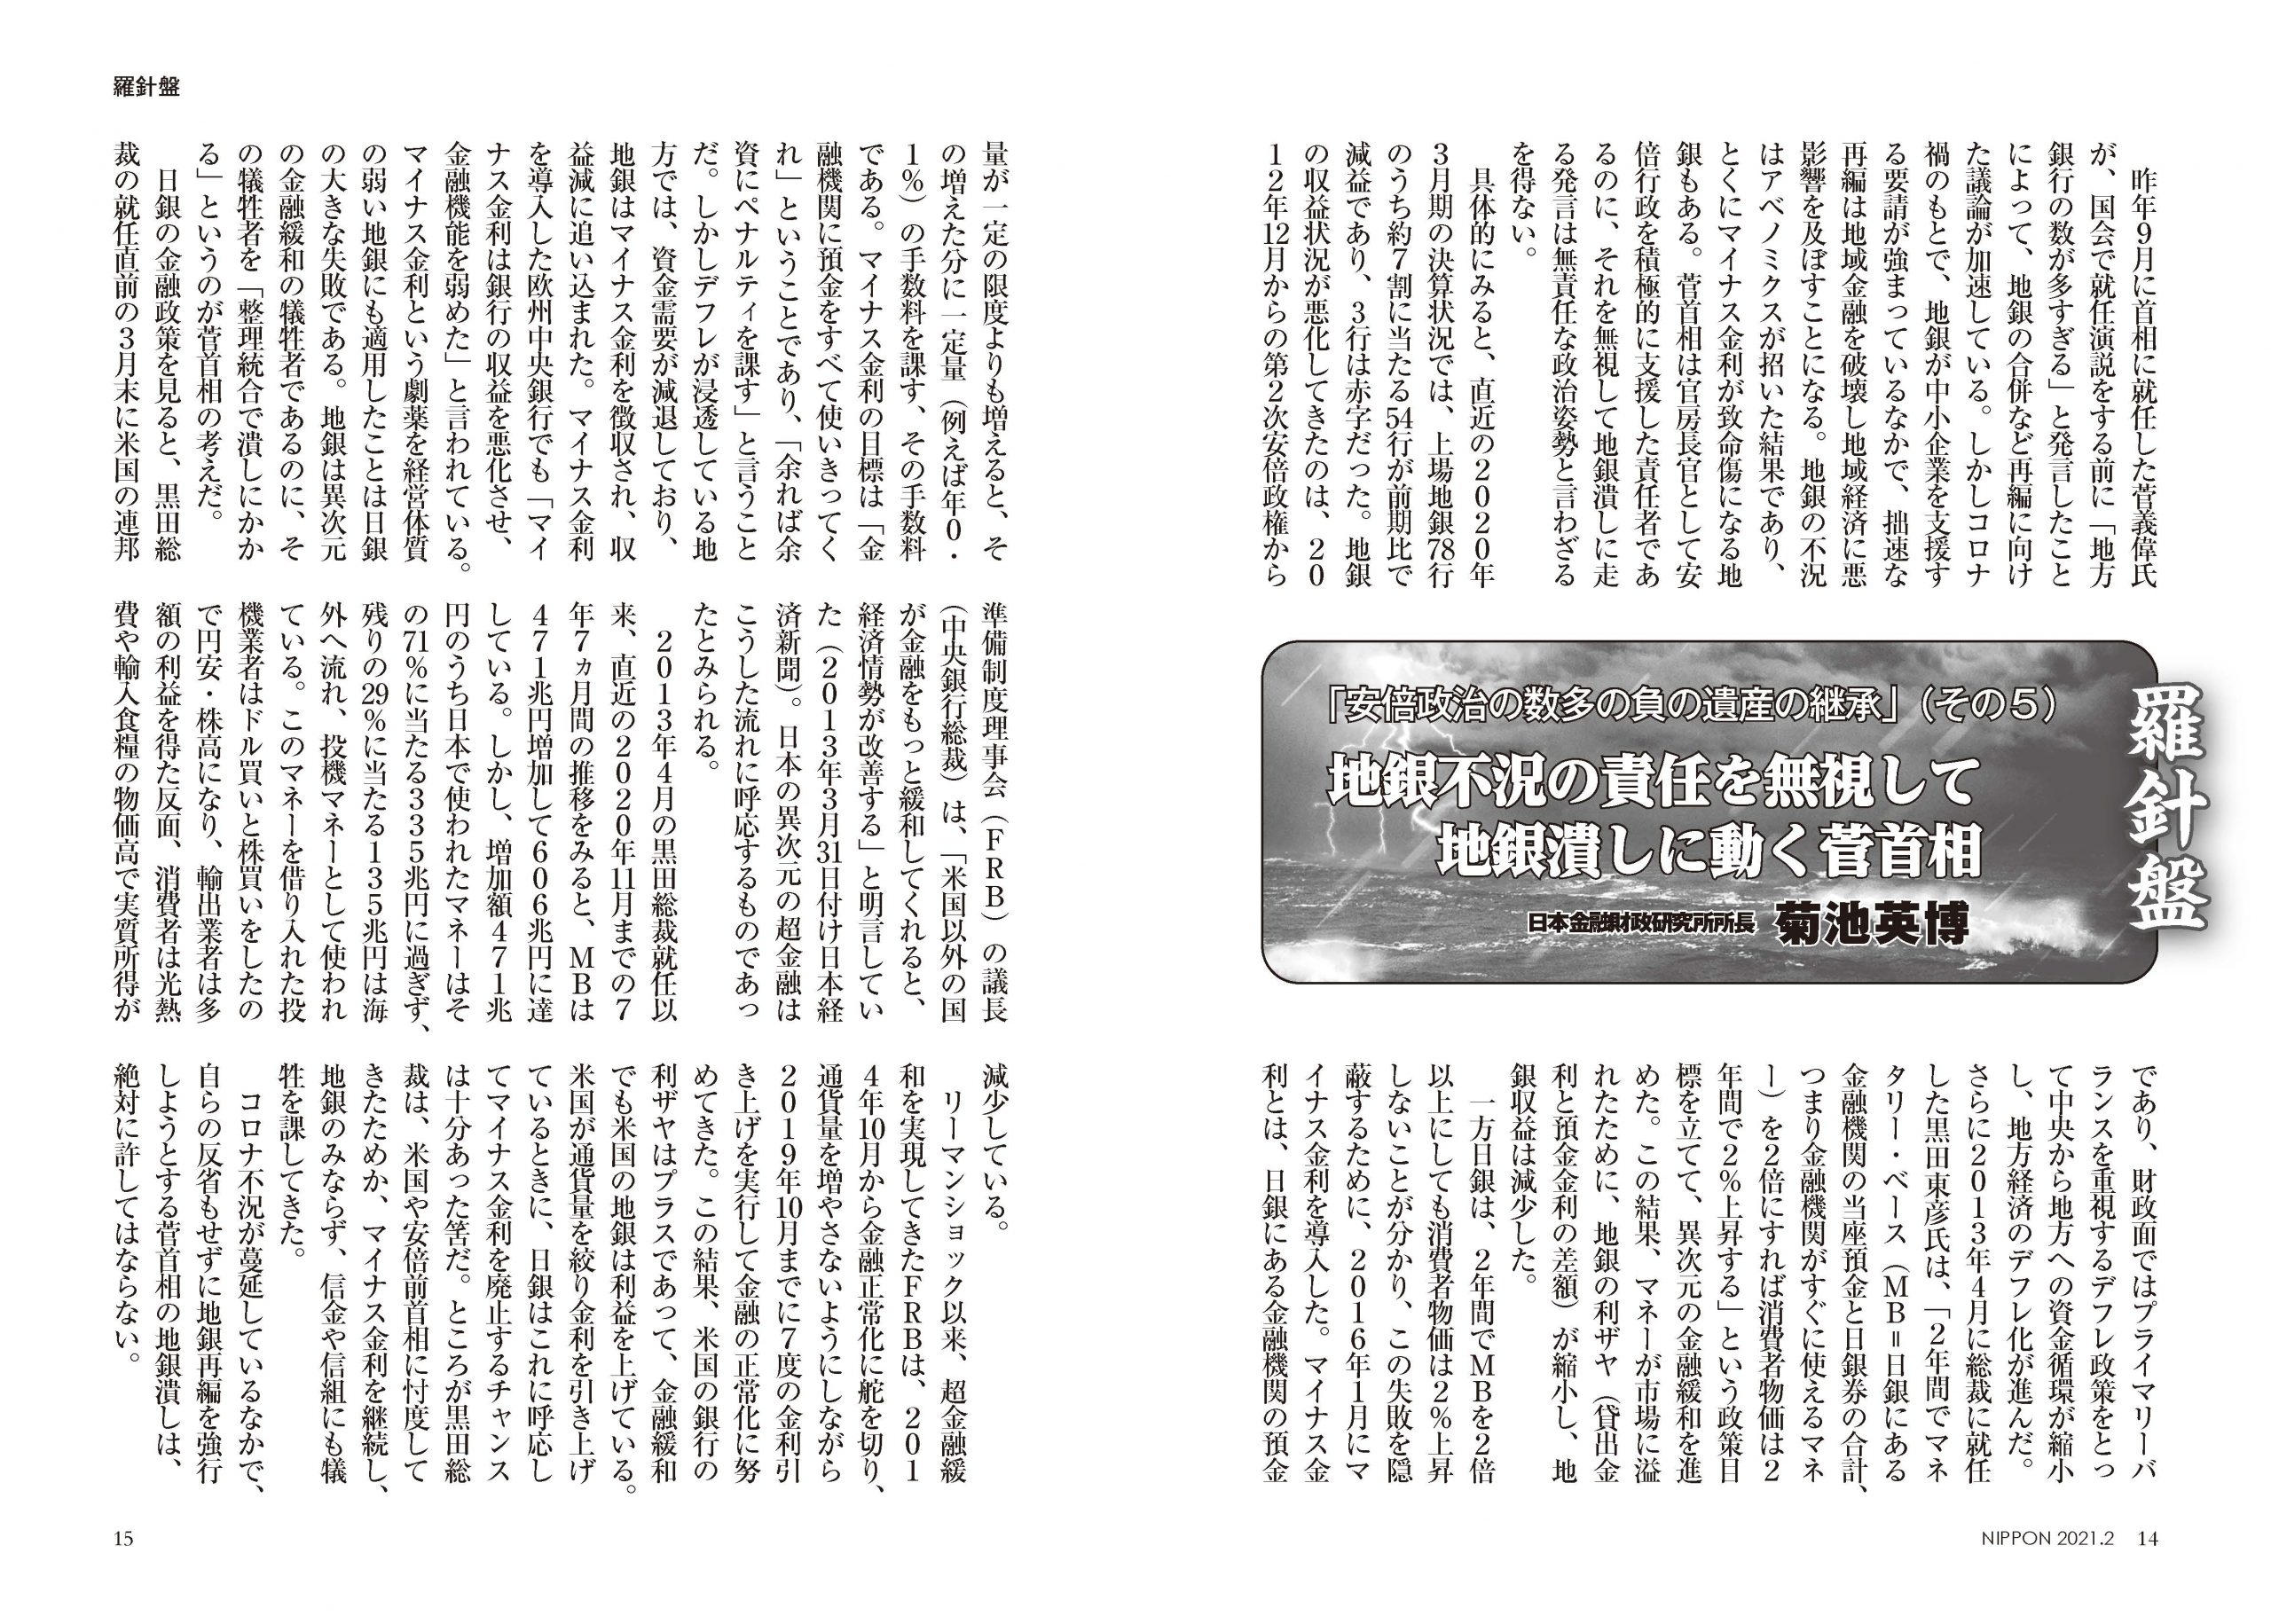 月刊日本2月号の「羅針盤」に「安倍政治の数多の負の遺産の継承 